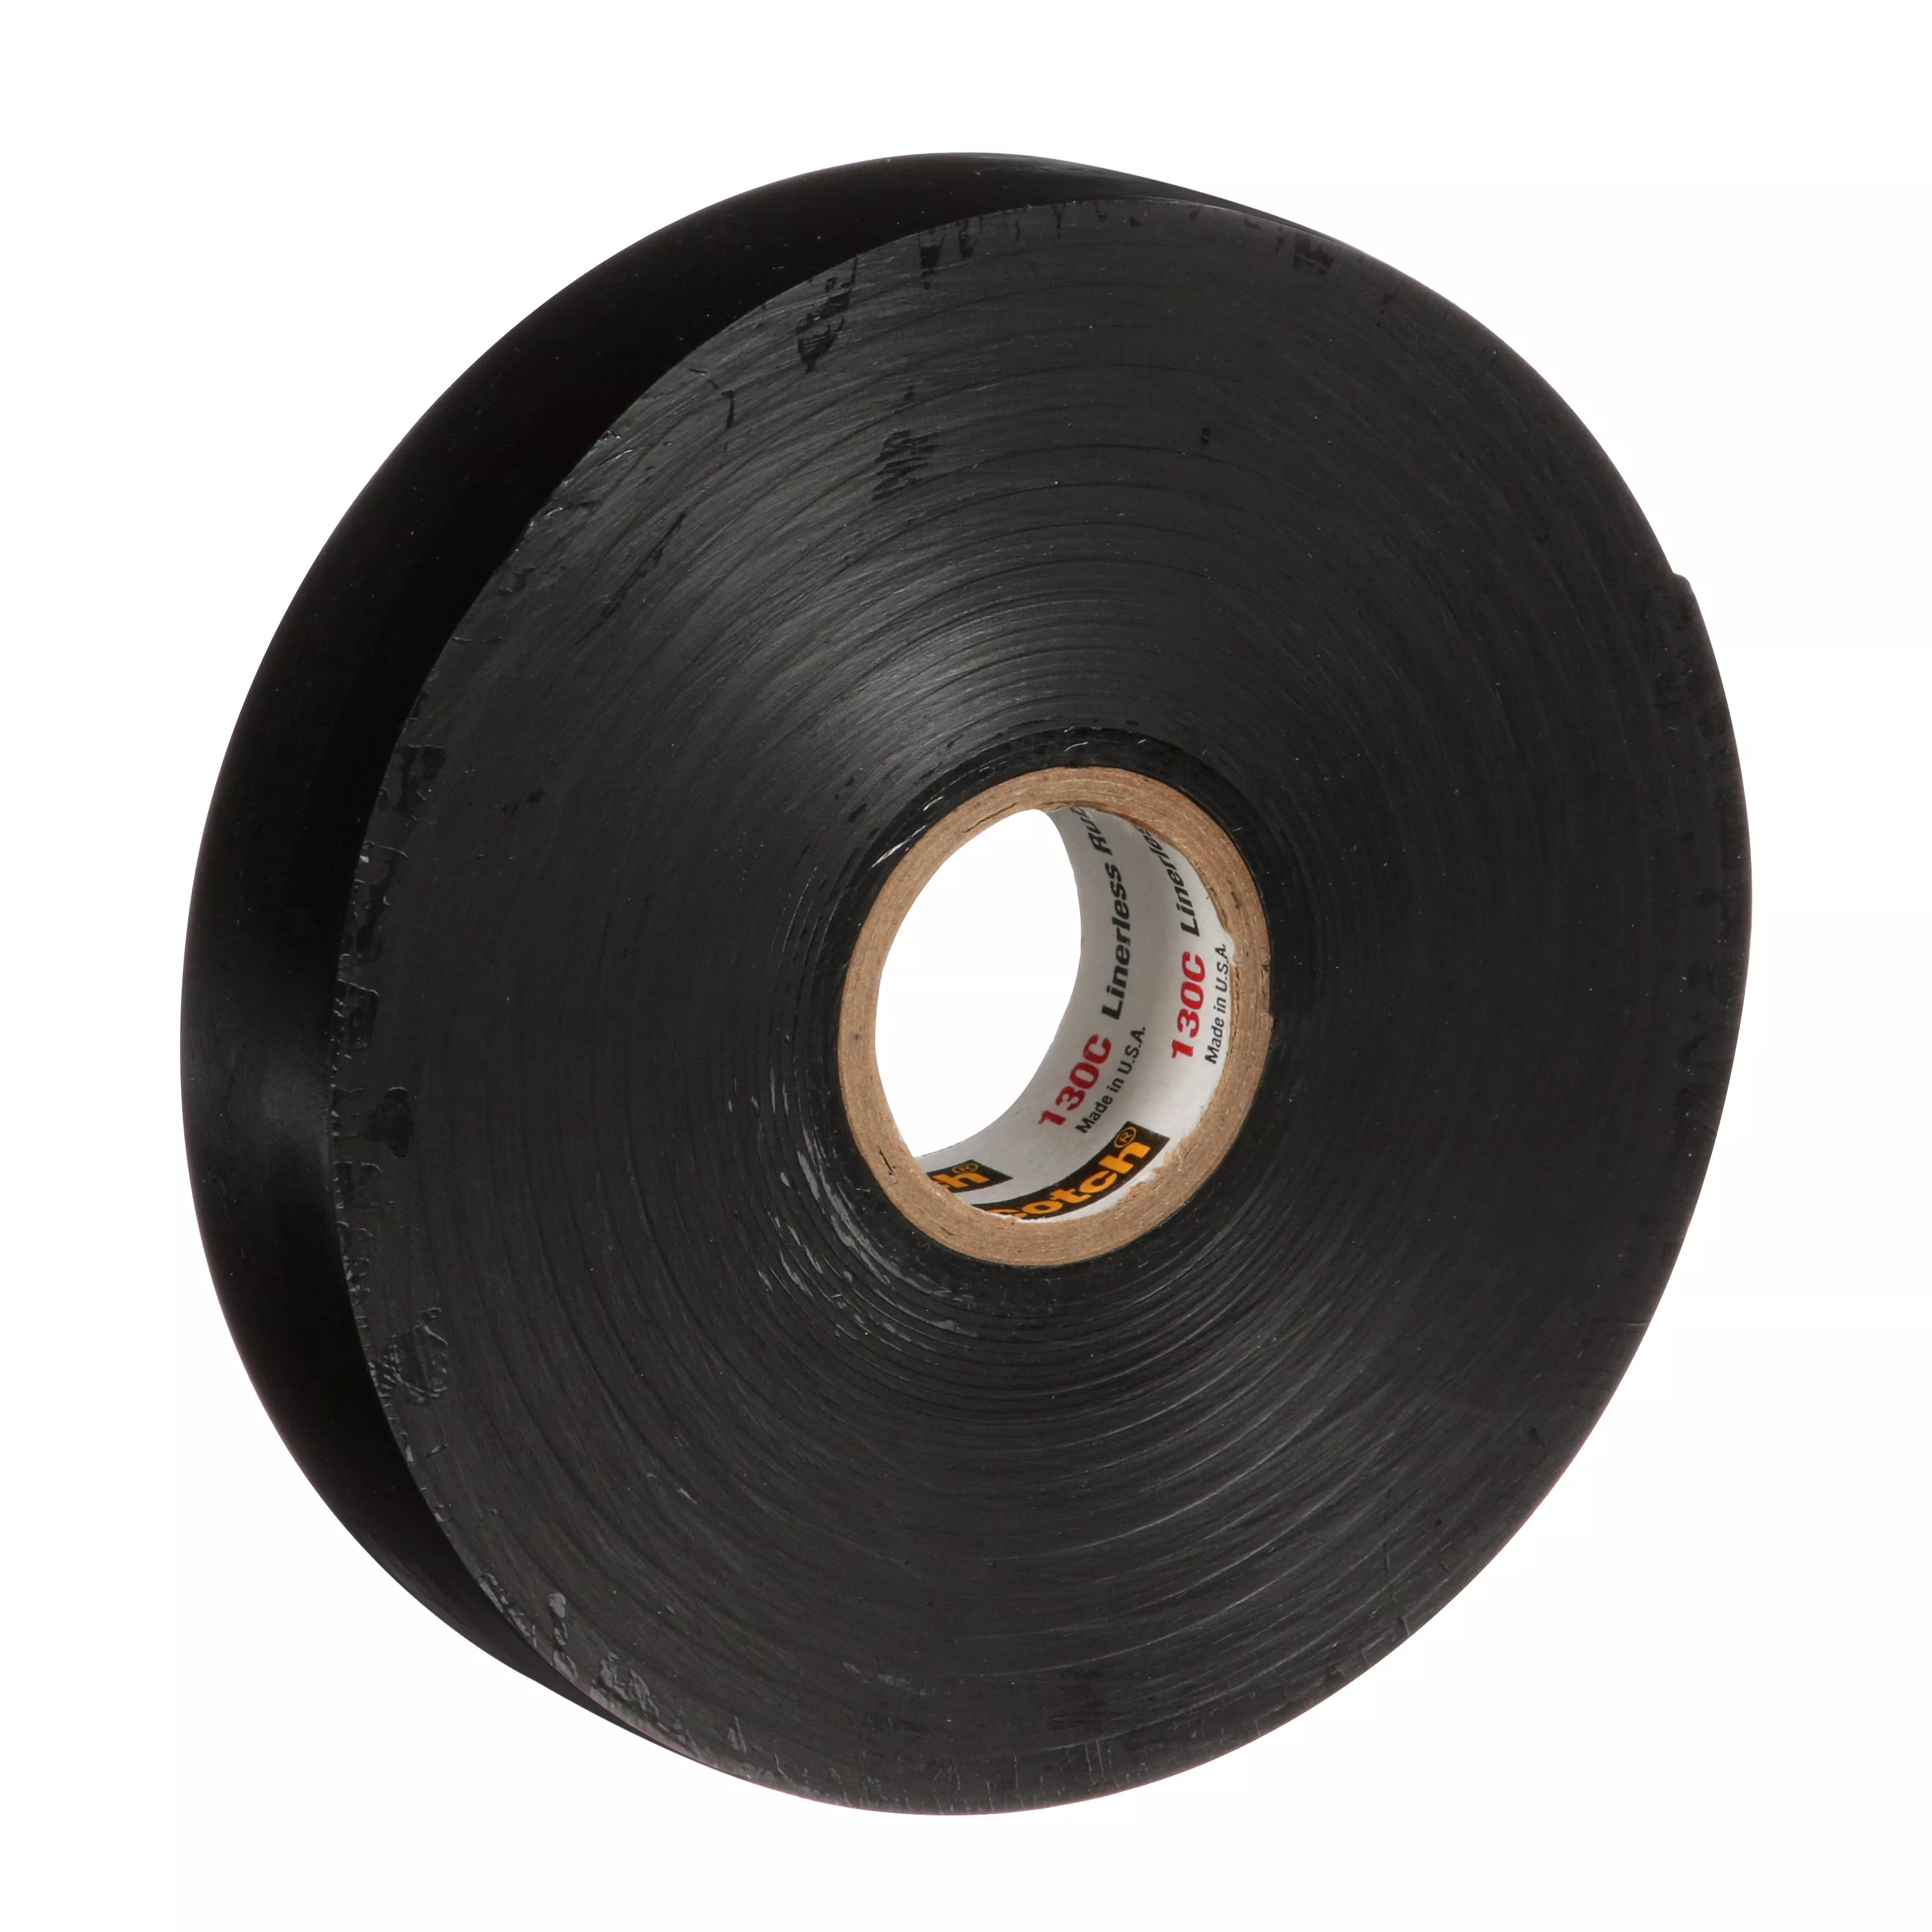 SKU 7000006085 | Scotch® Linerless Rubber Splicing Tape 130C